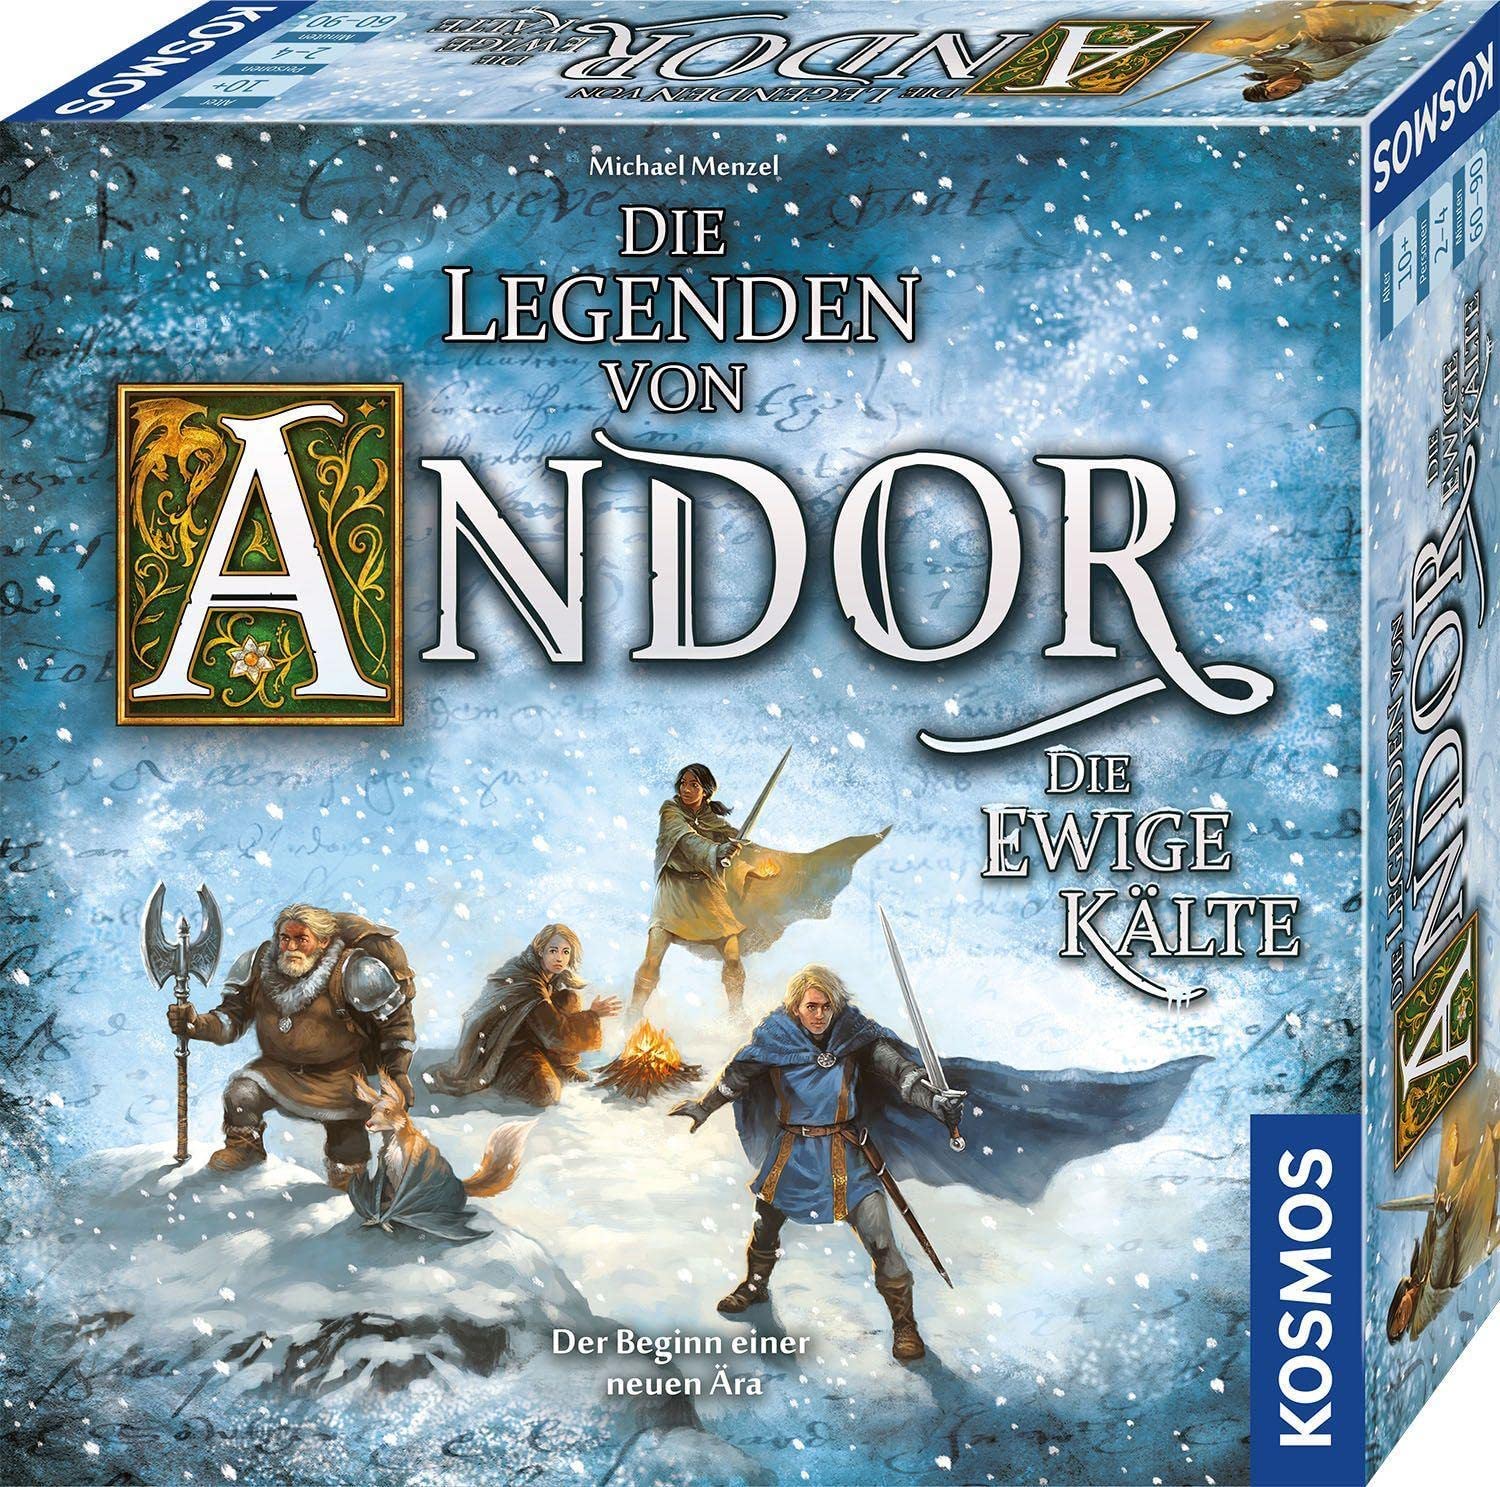 Kosmos 683351 Andor - The Eternal Cold Board Game, Multicoloured